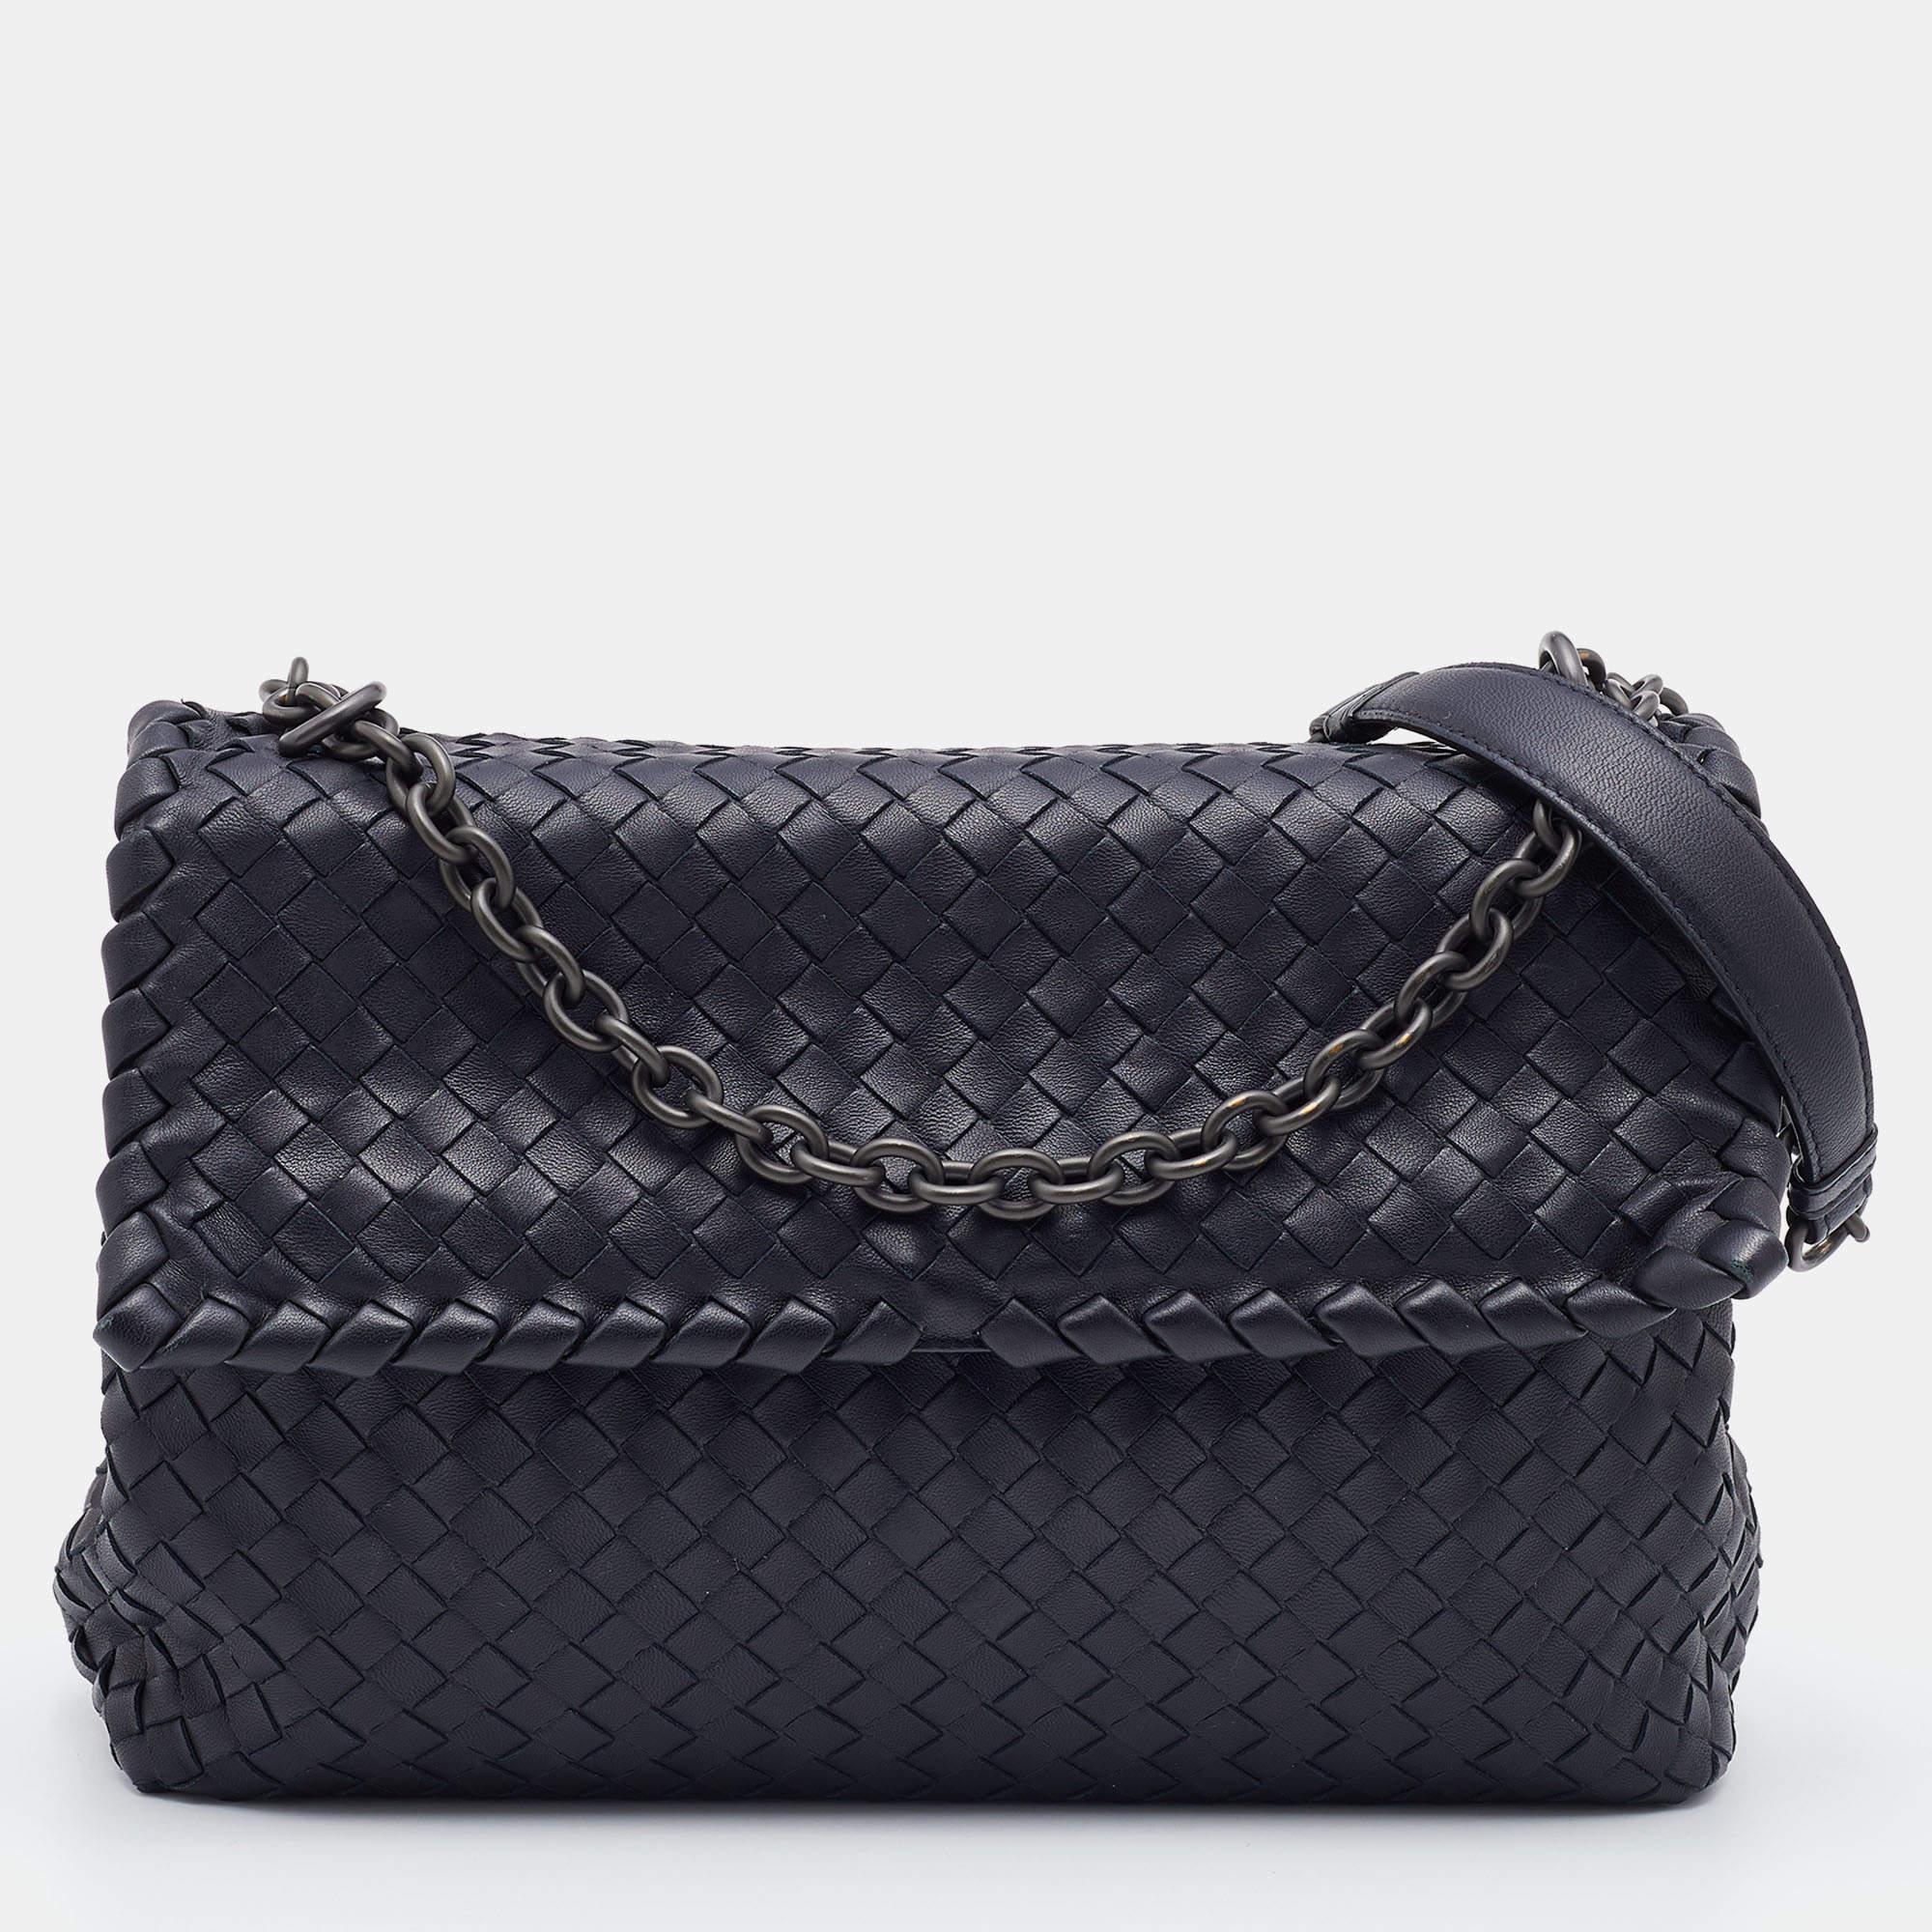 Bottega Veneta Black Intrecciato Leather Medium Olimpia Shoulder Bag 2